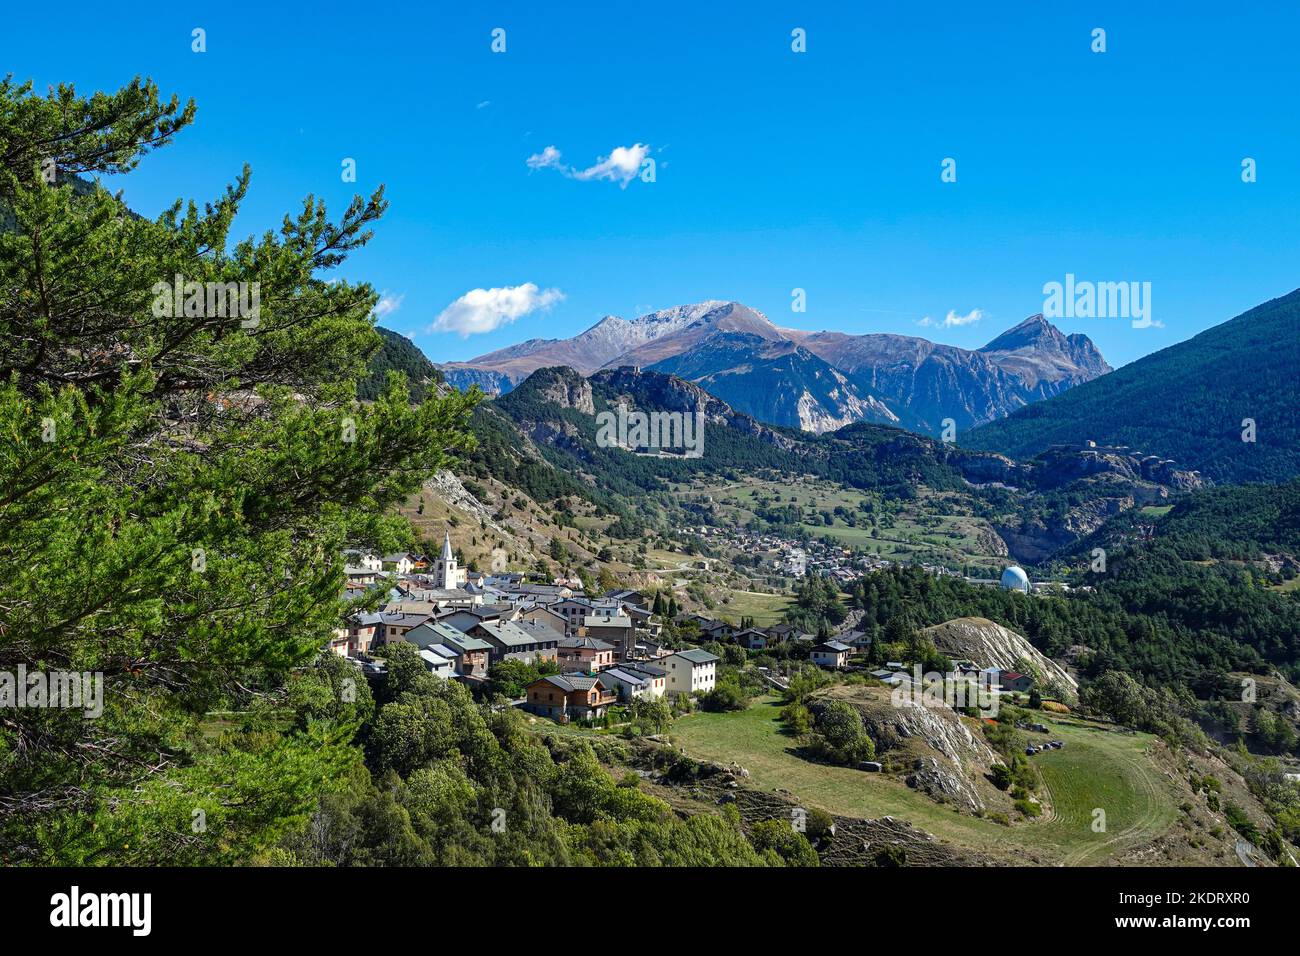 Los fuertes de la barrera de Essilon y Avrieux en el valle de Maurienne, Vanoise, los Alpes franceses, Francia, los Alpes, Alpino Foto de stock